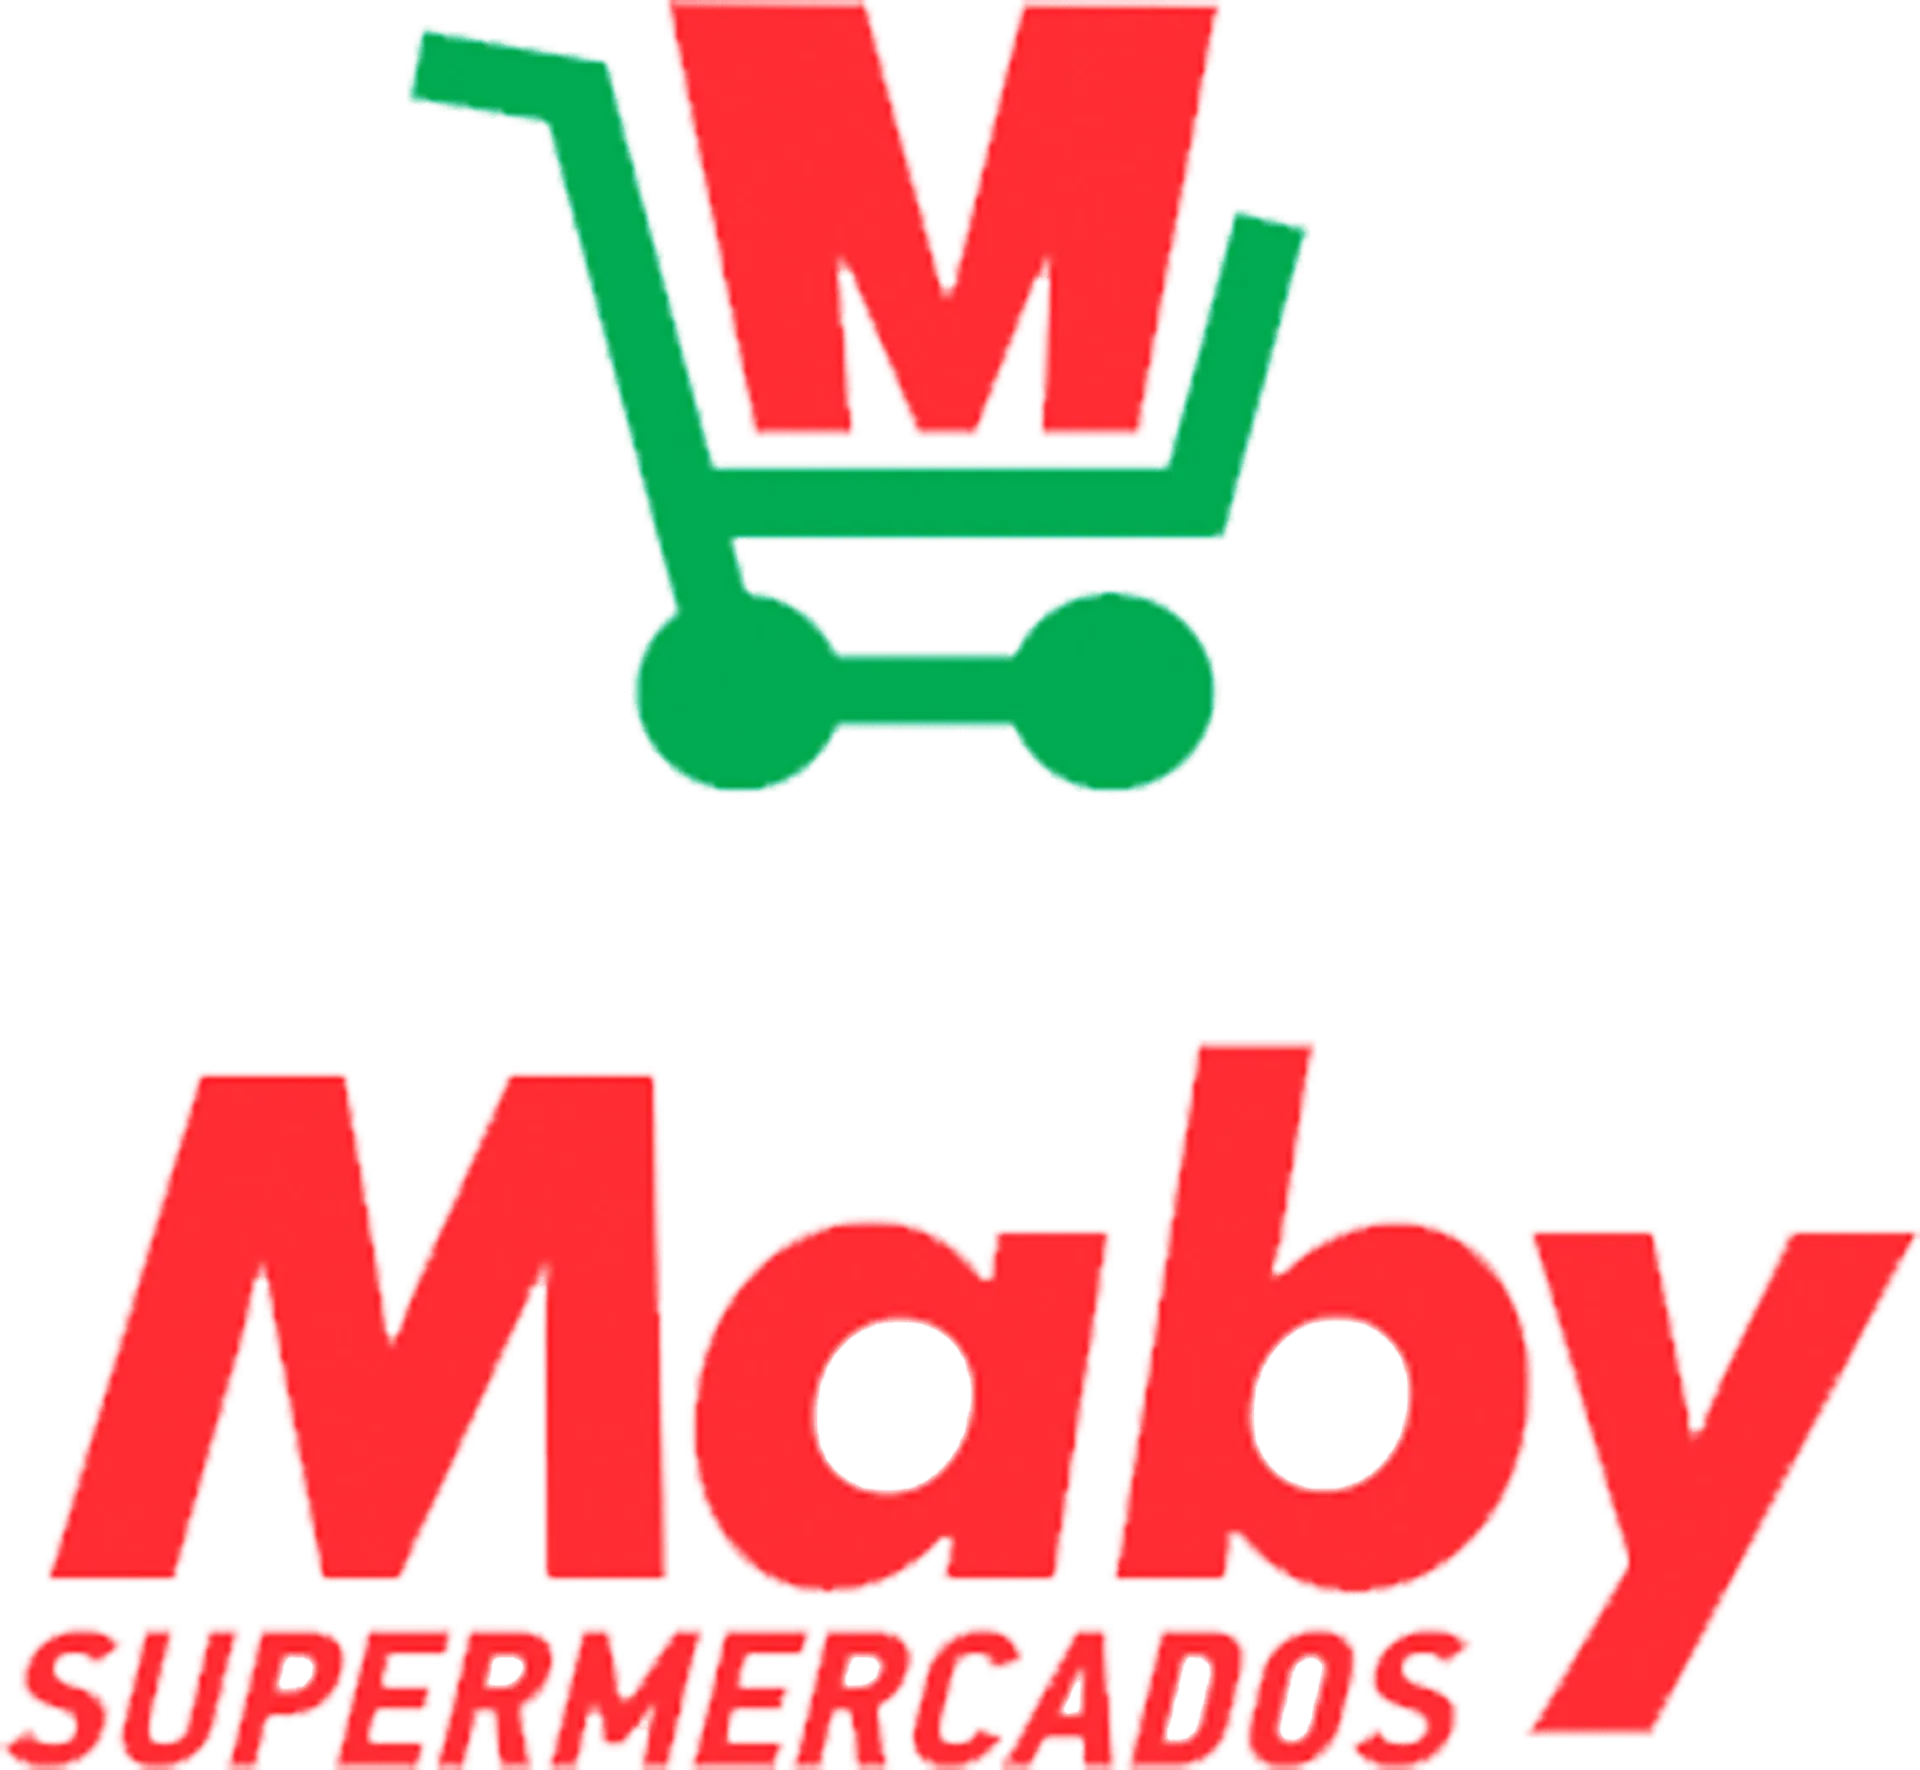 MABY SUPERMERCADOS logo